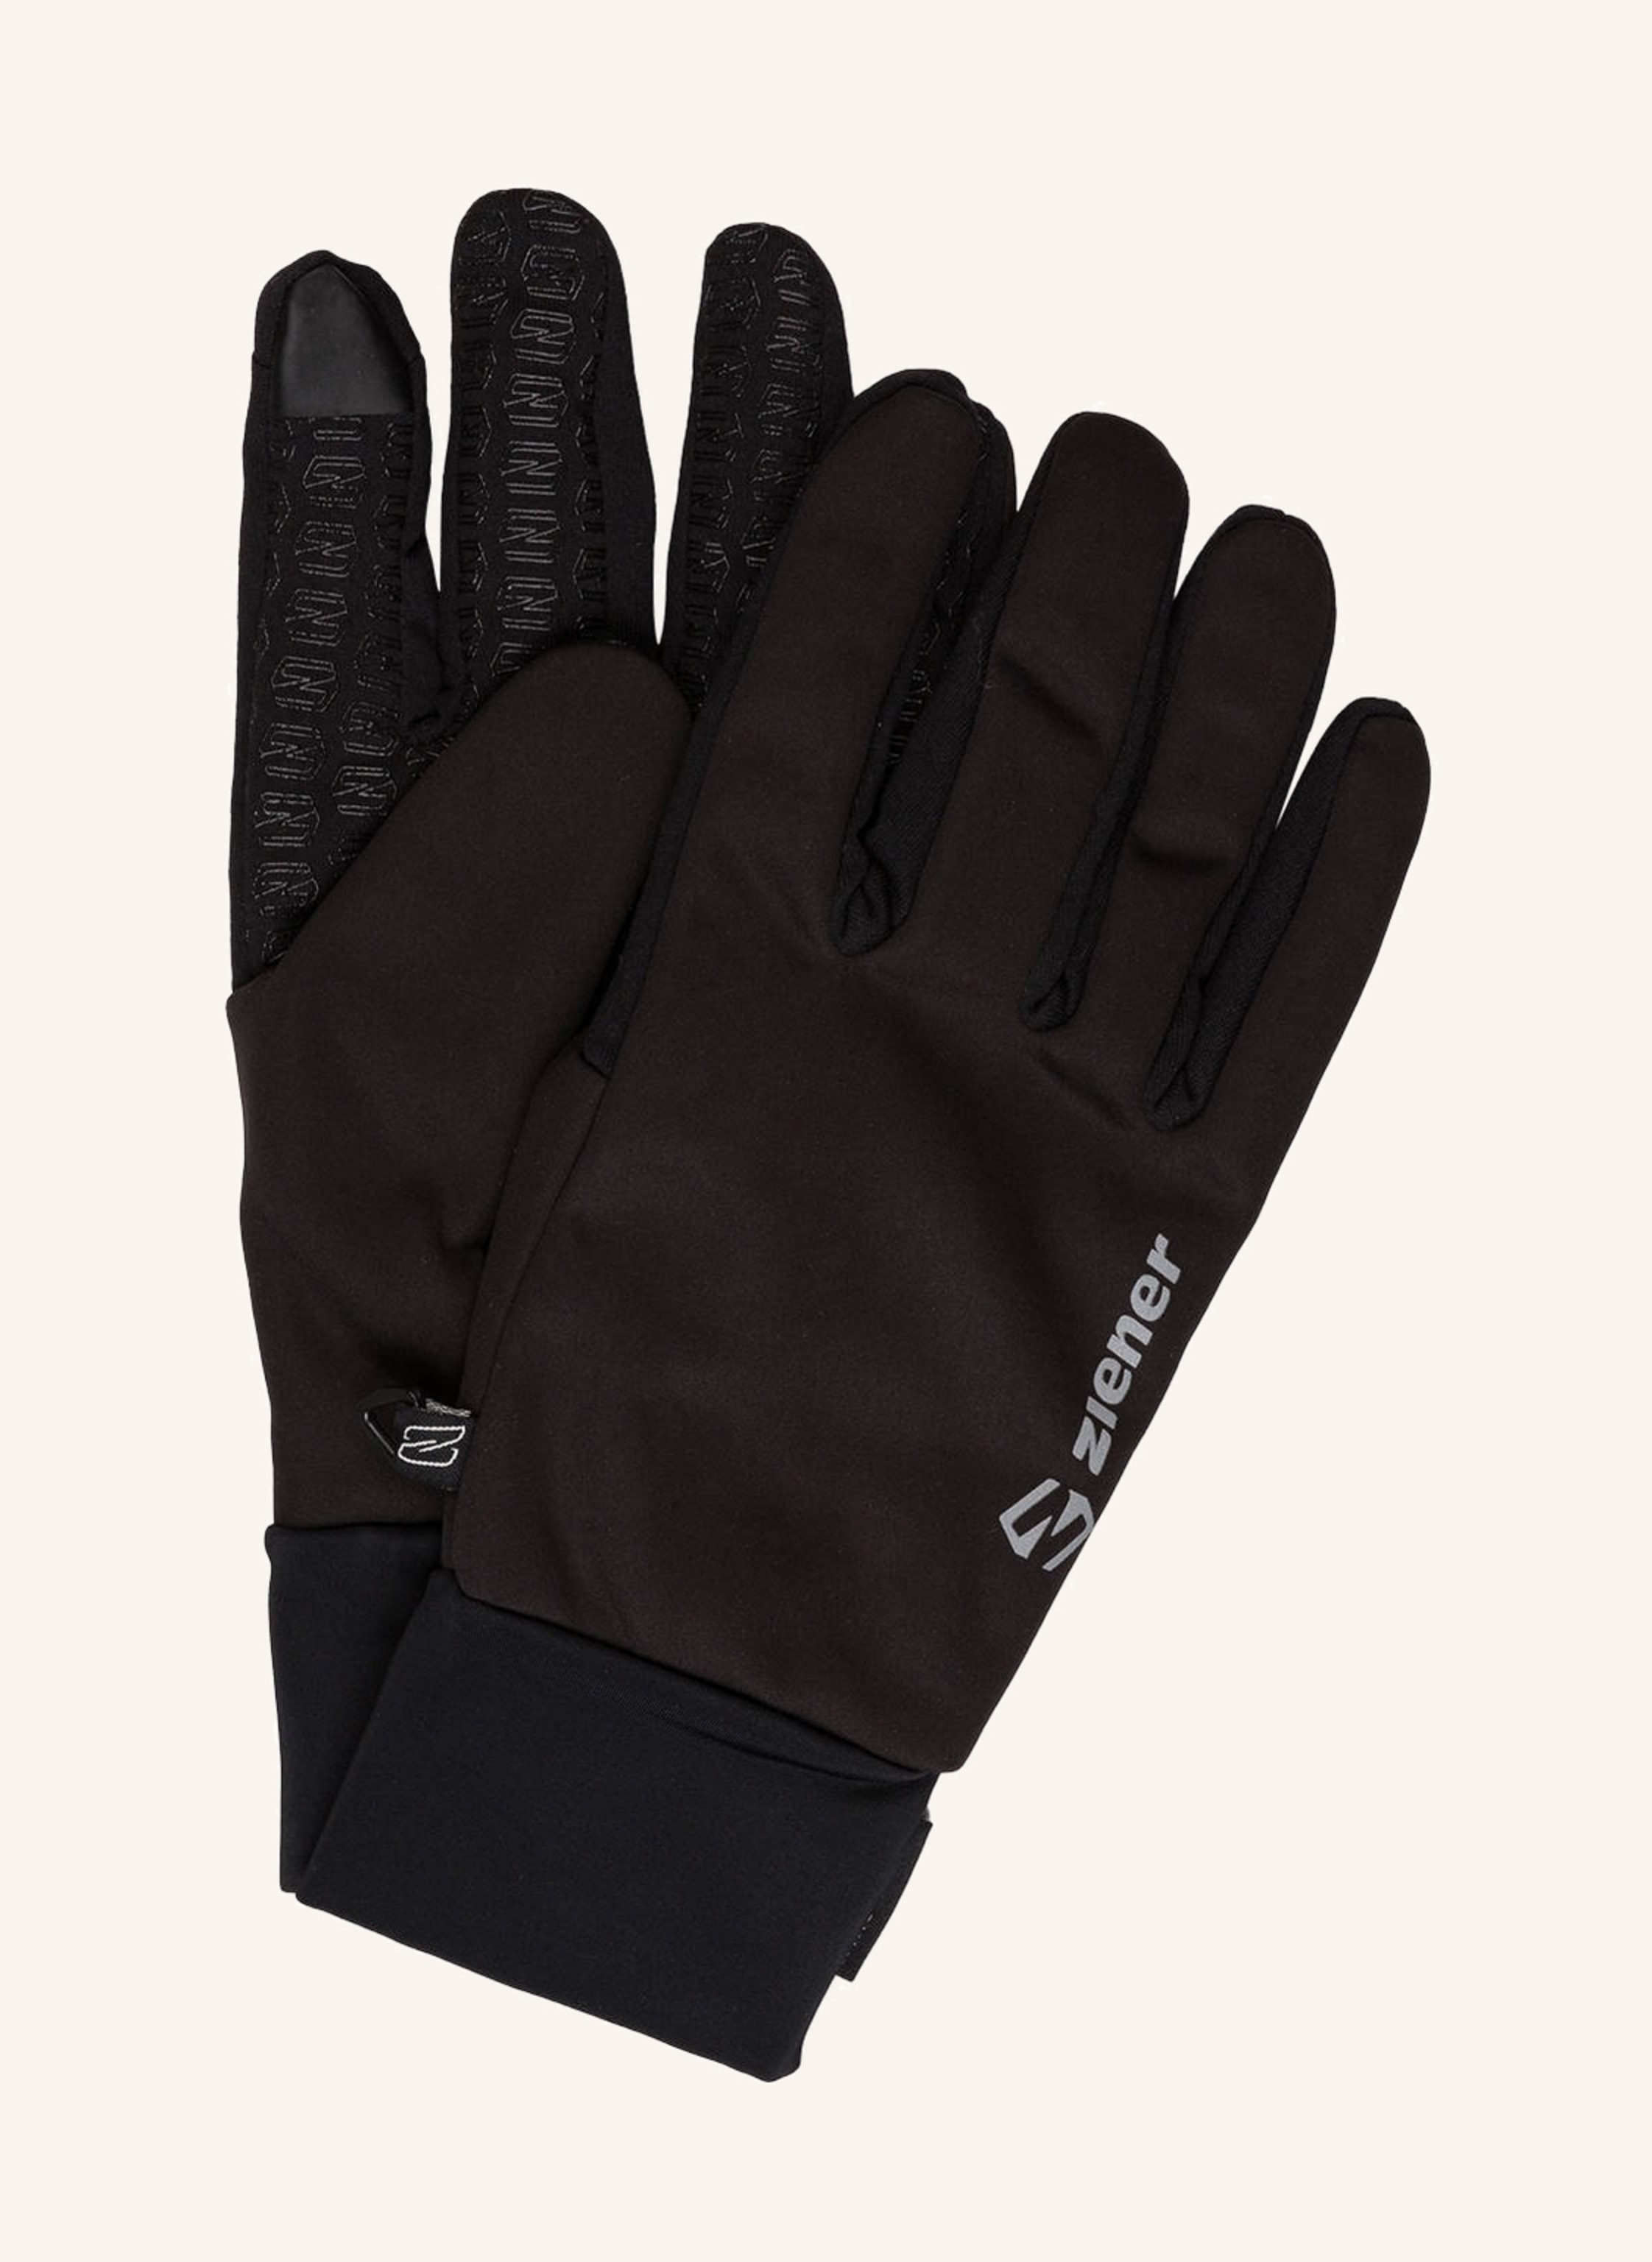 ziener Multisport gloves IVIDURO TOUCH in black